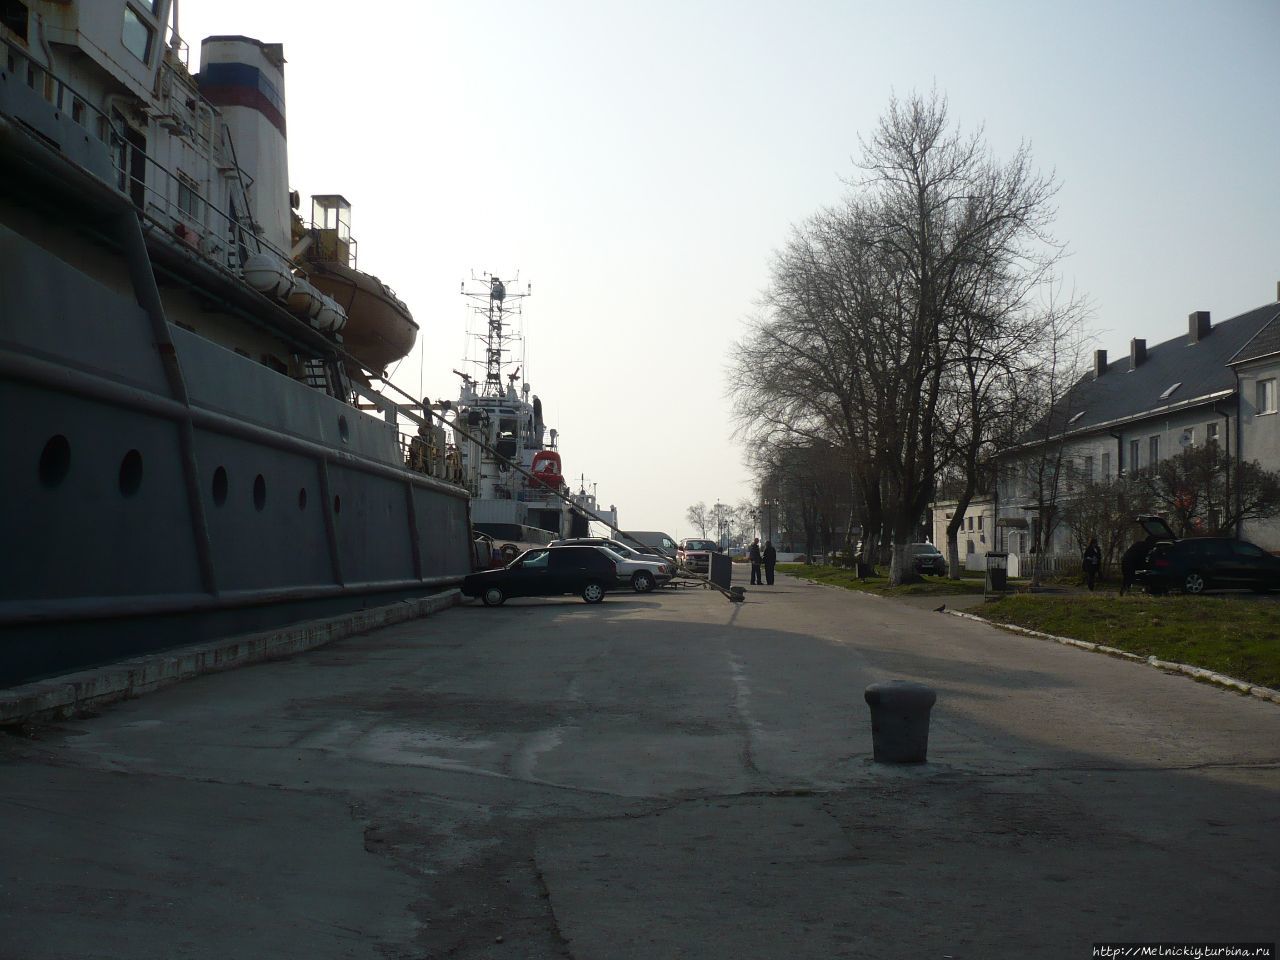 Белоснежные лебеди на фоне боевых кораблей Балтийск, Россия